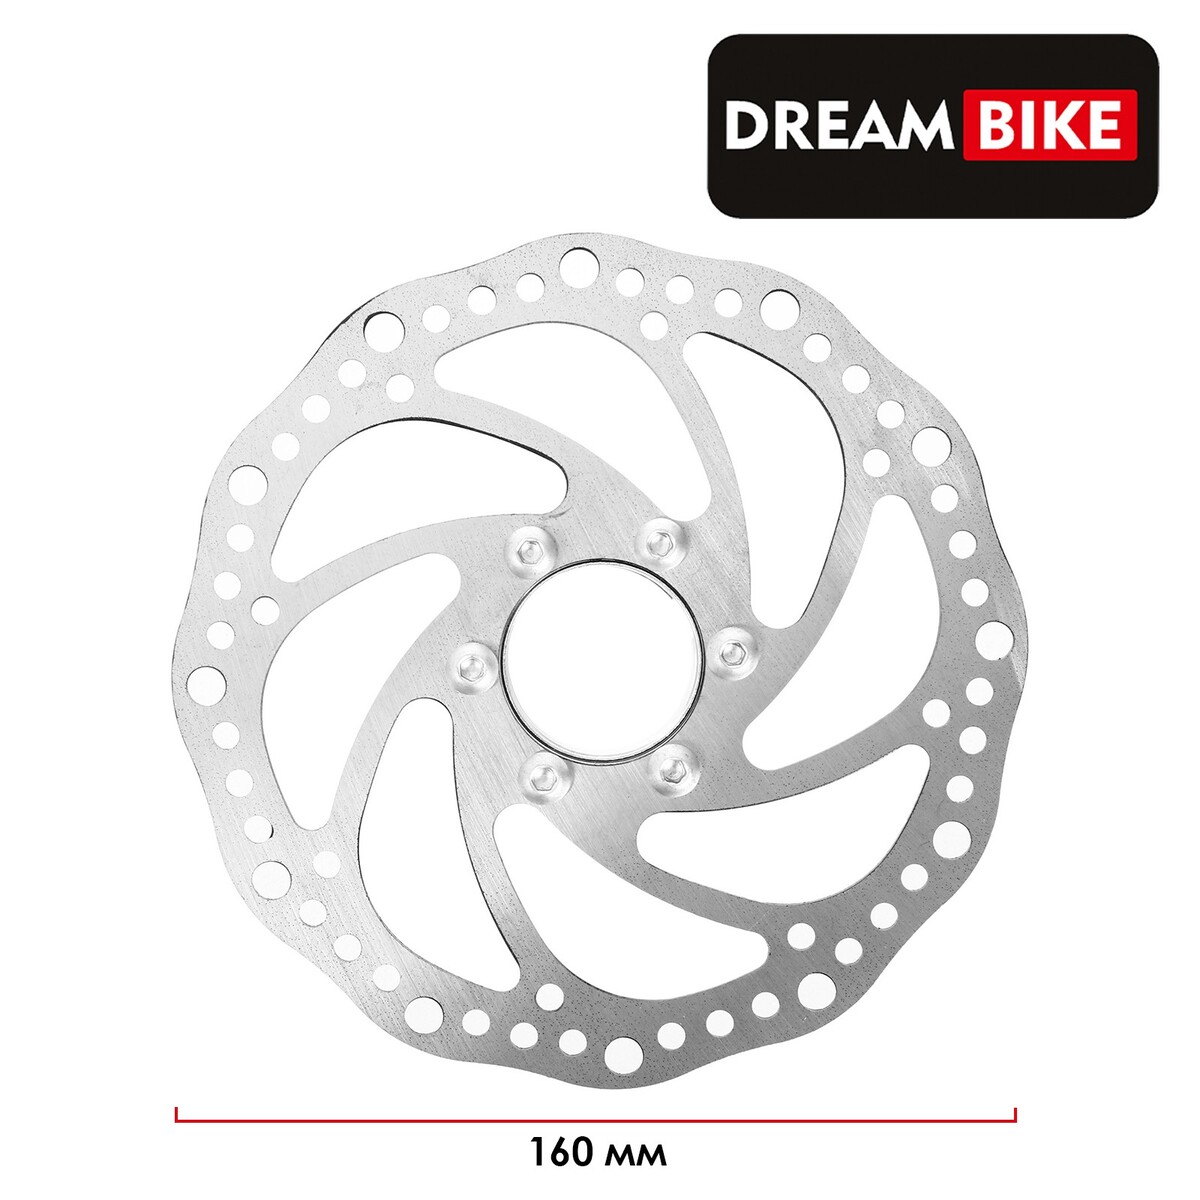   dream bike,  , 160 